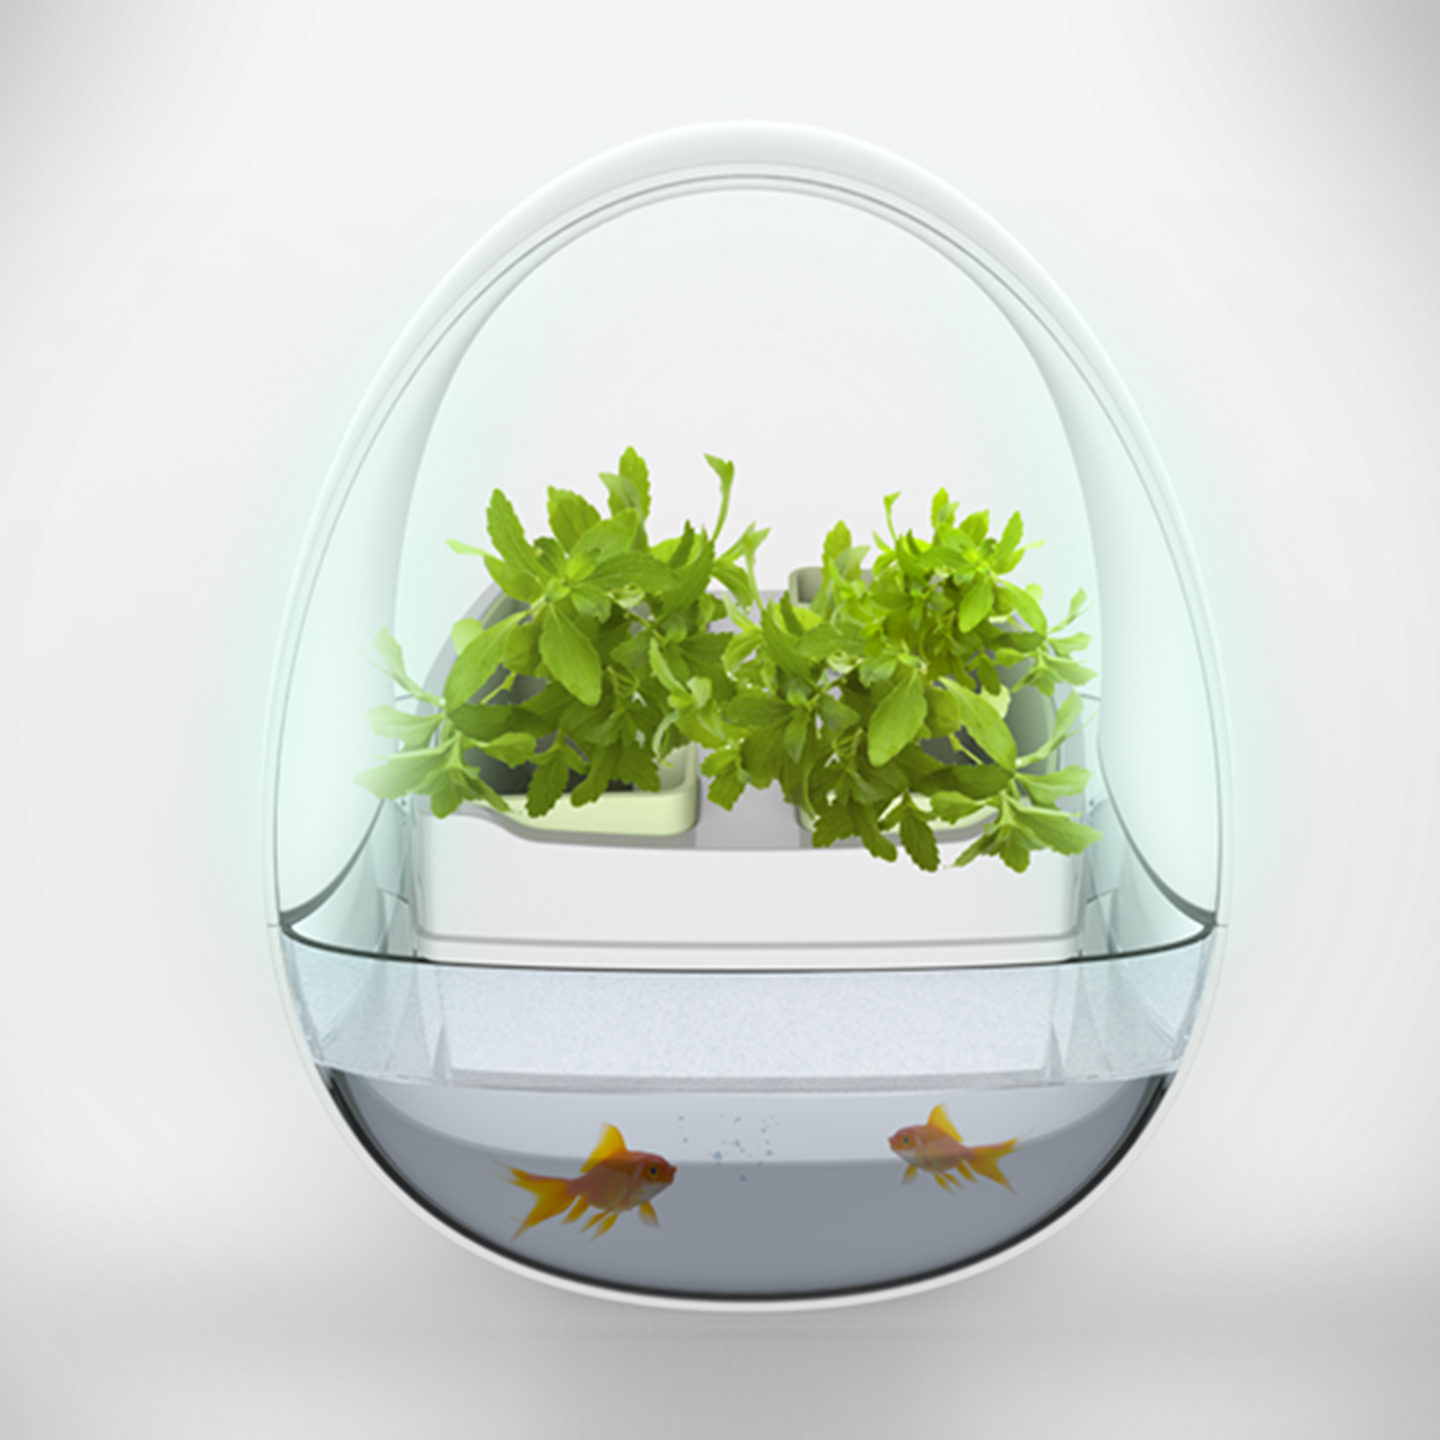 生态鱼缸设计-蓝布生态鱼缸设计